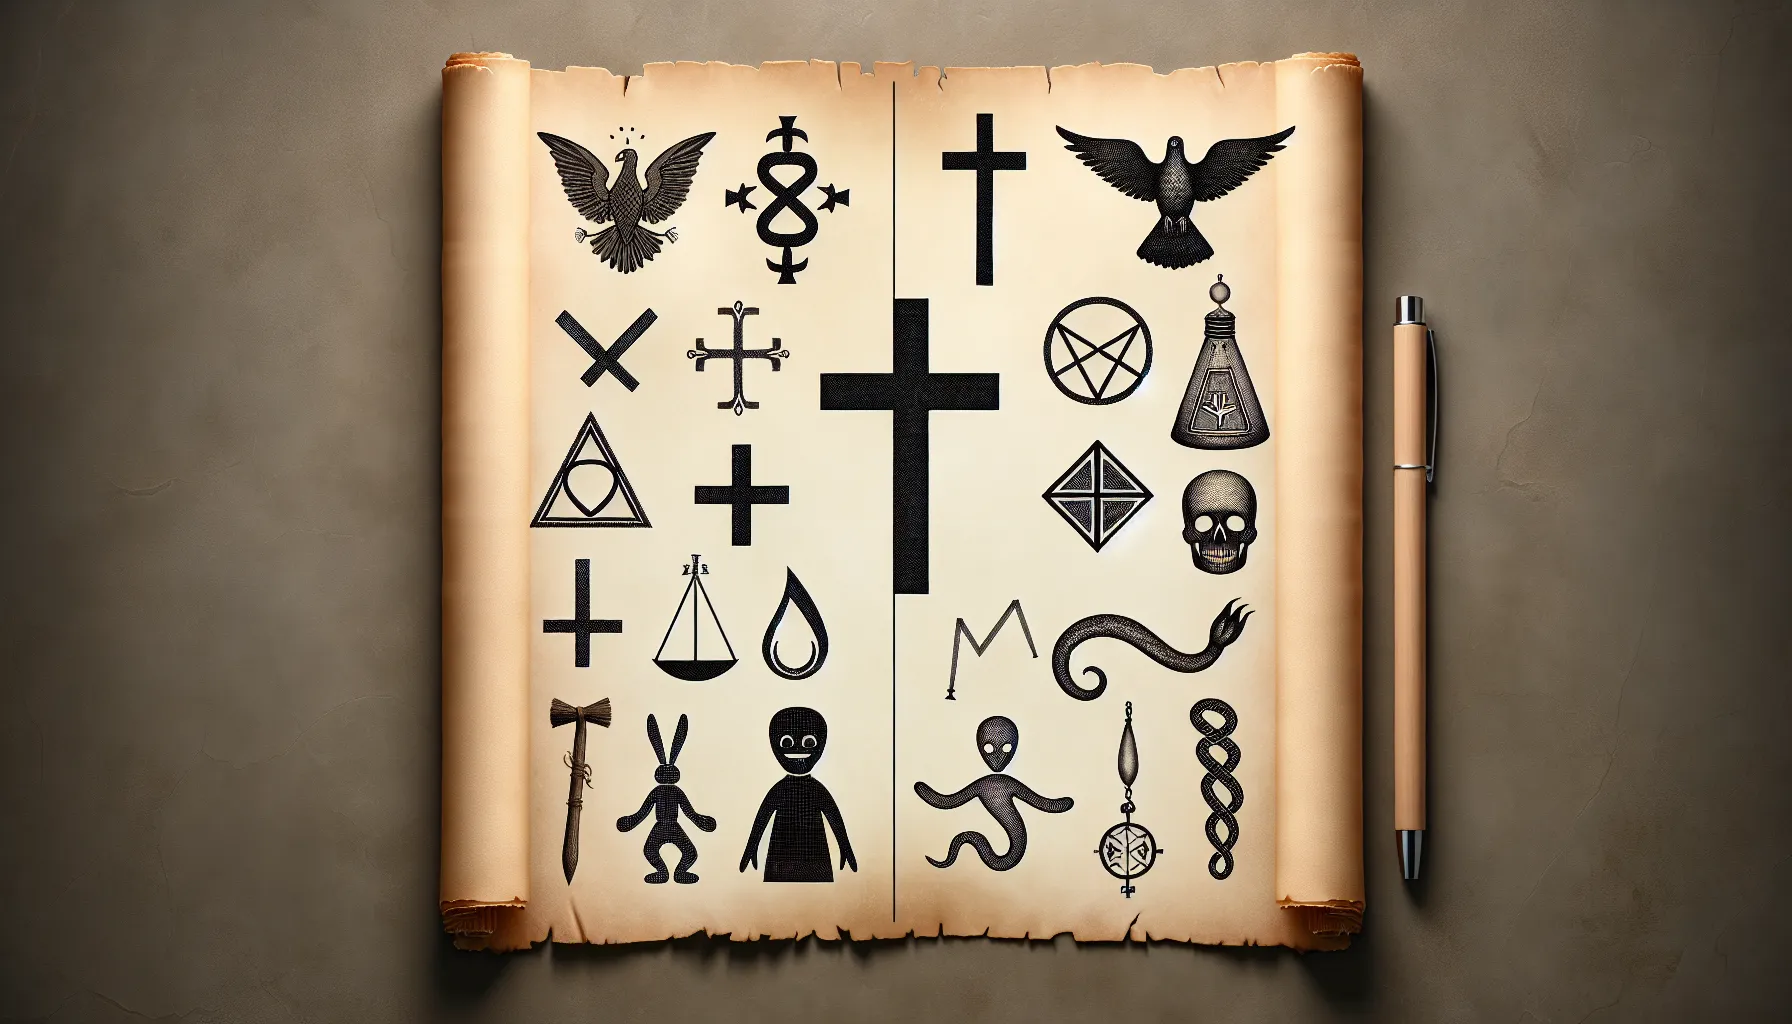 Imagen de un pergamino con símbolos religiosos cristianos y elementos vudú